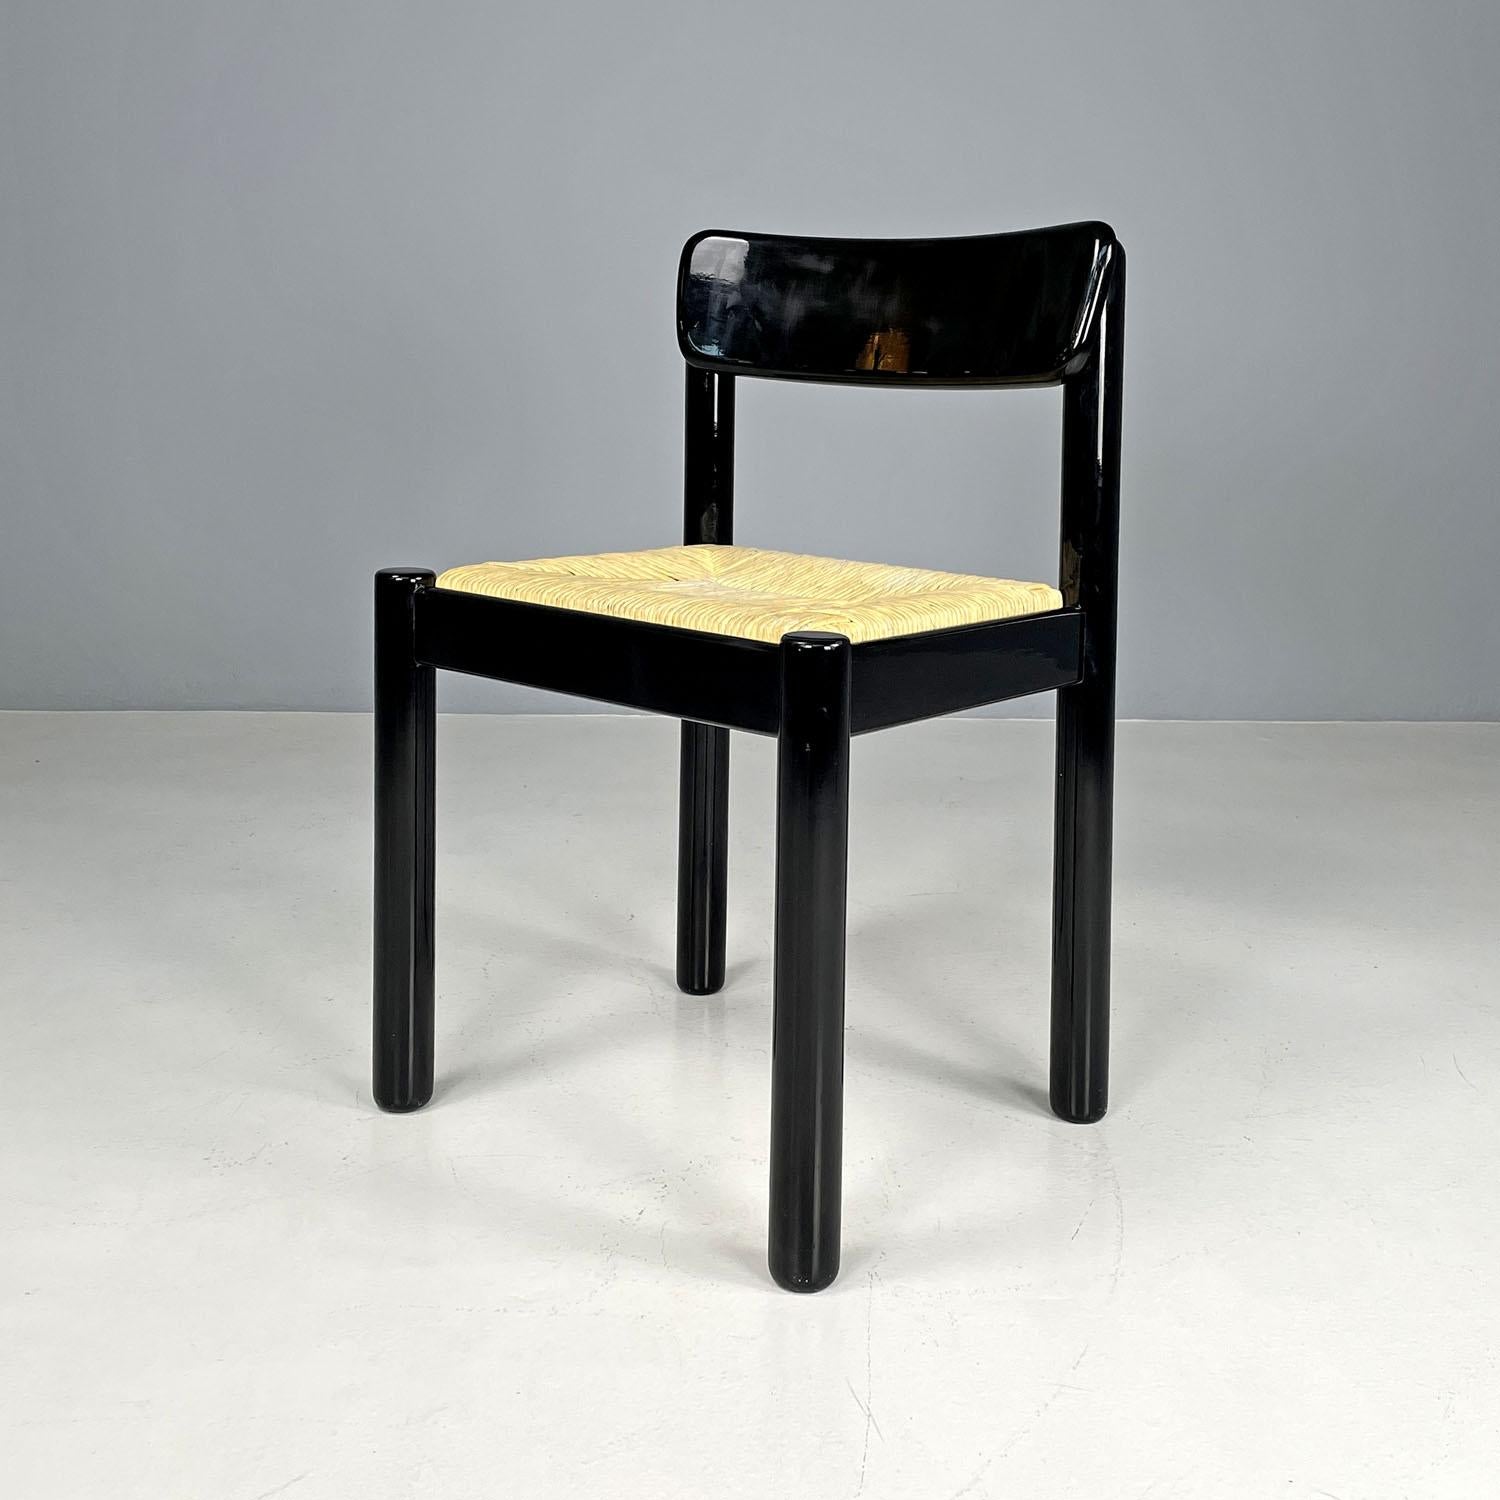 Chaise moderne italienne en paille et bois noir, 1970
Chaise avec base rectangulaire. L'assise est en paille, la structure est en bois laqué noir avec une finition brillante. Le dossier présente une ligne courbe et accueillante. Les quatre pieds ont